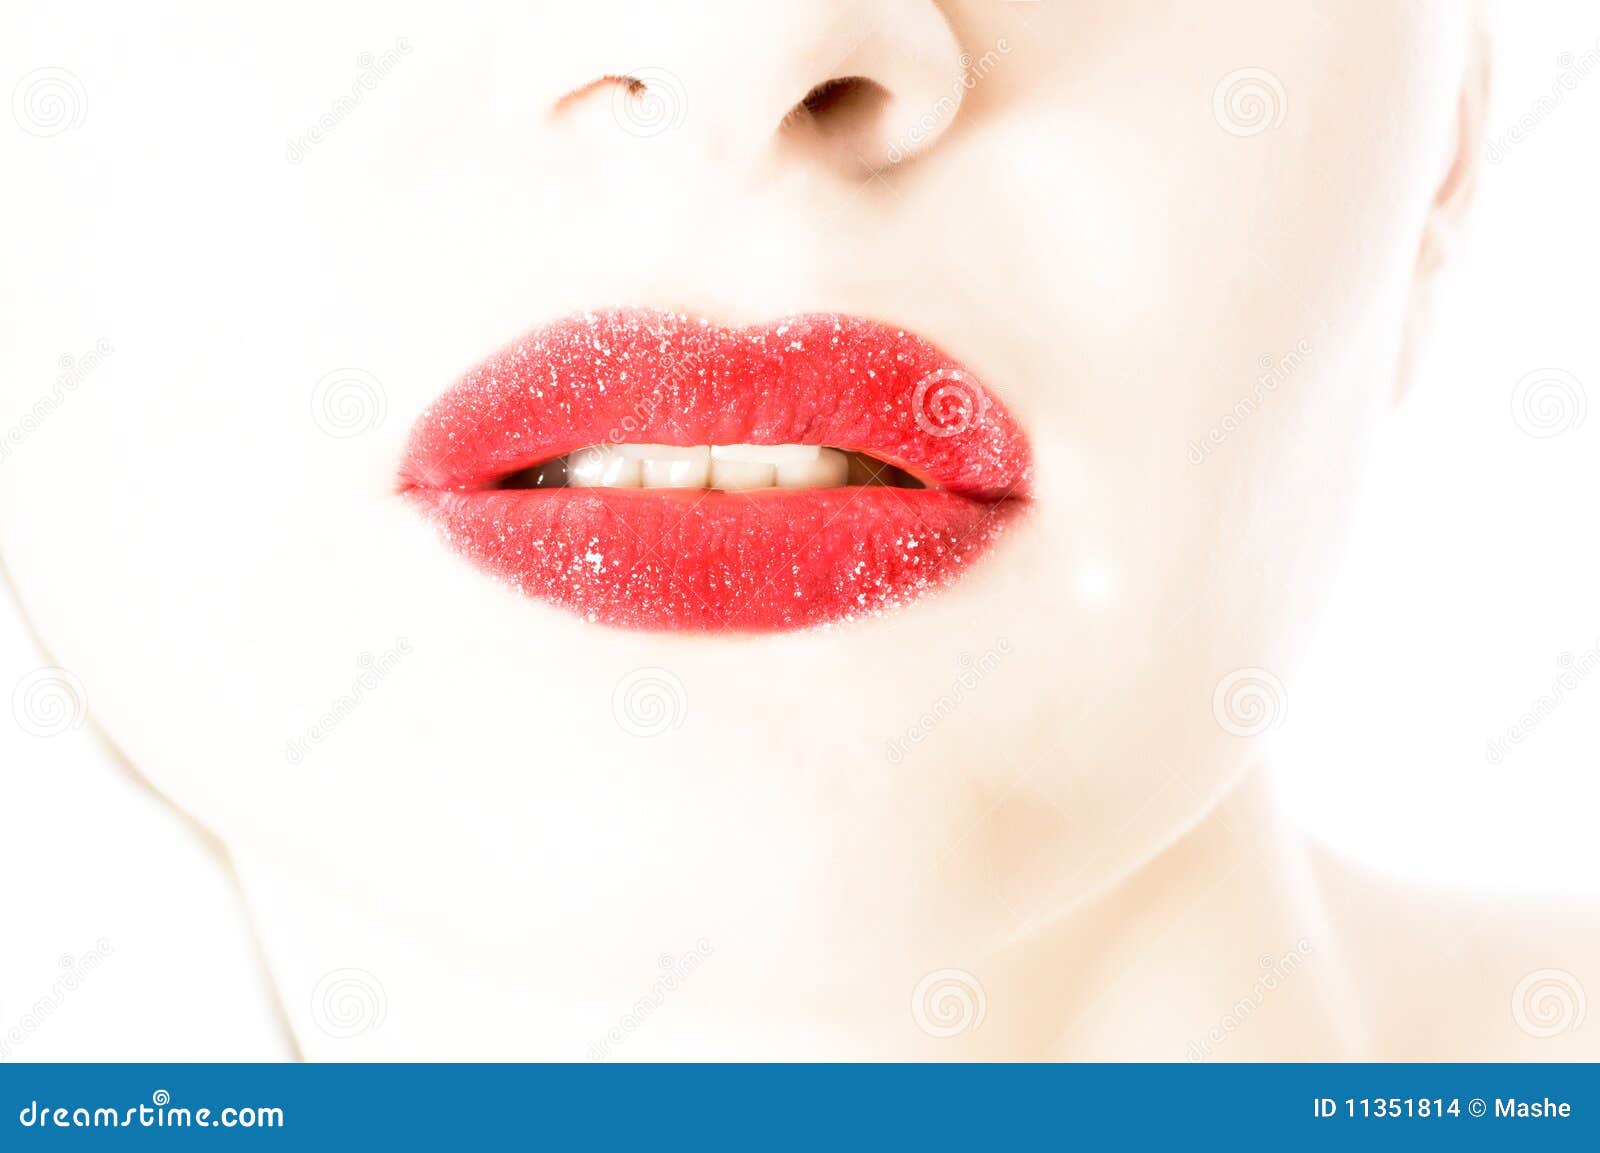 Beautiful woman lips stock photo. Image of lips, lipstick - 11351814